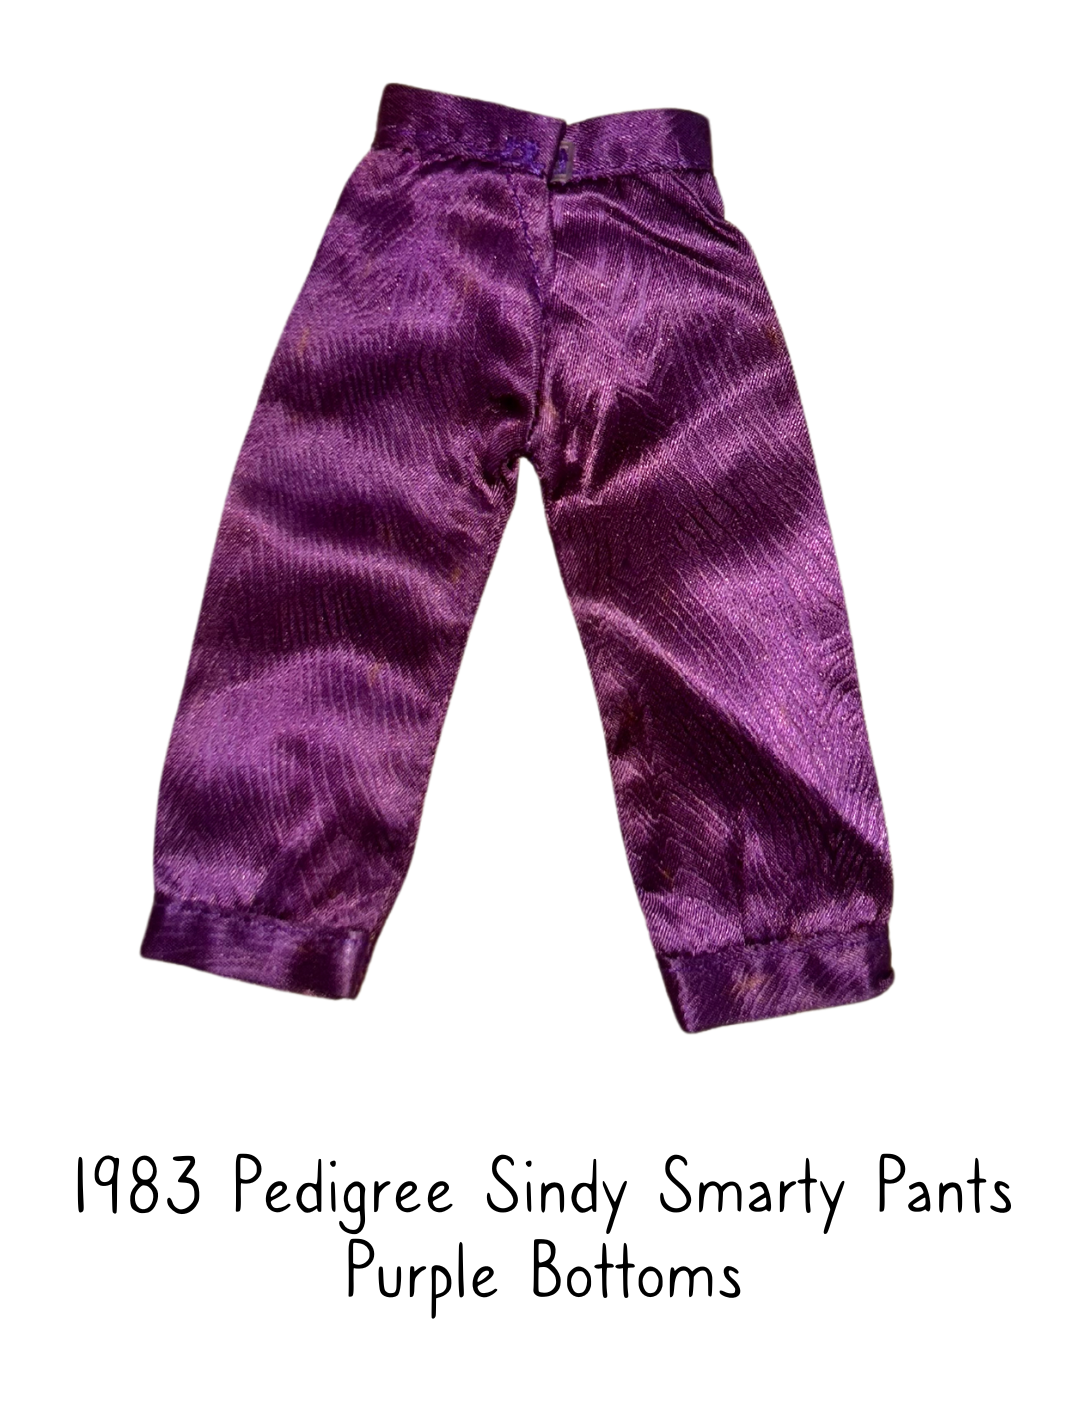 1983 Pedigree Sindy Fashion Doll Smarty Pants Purple Trousers